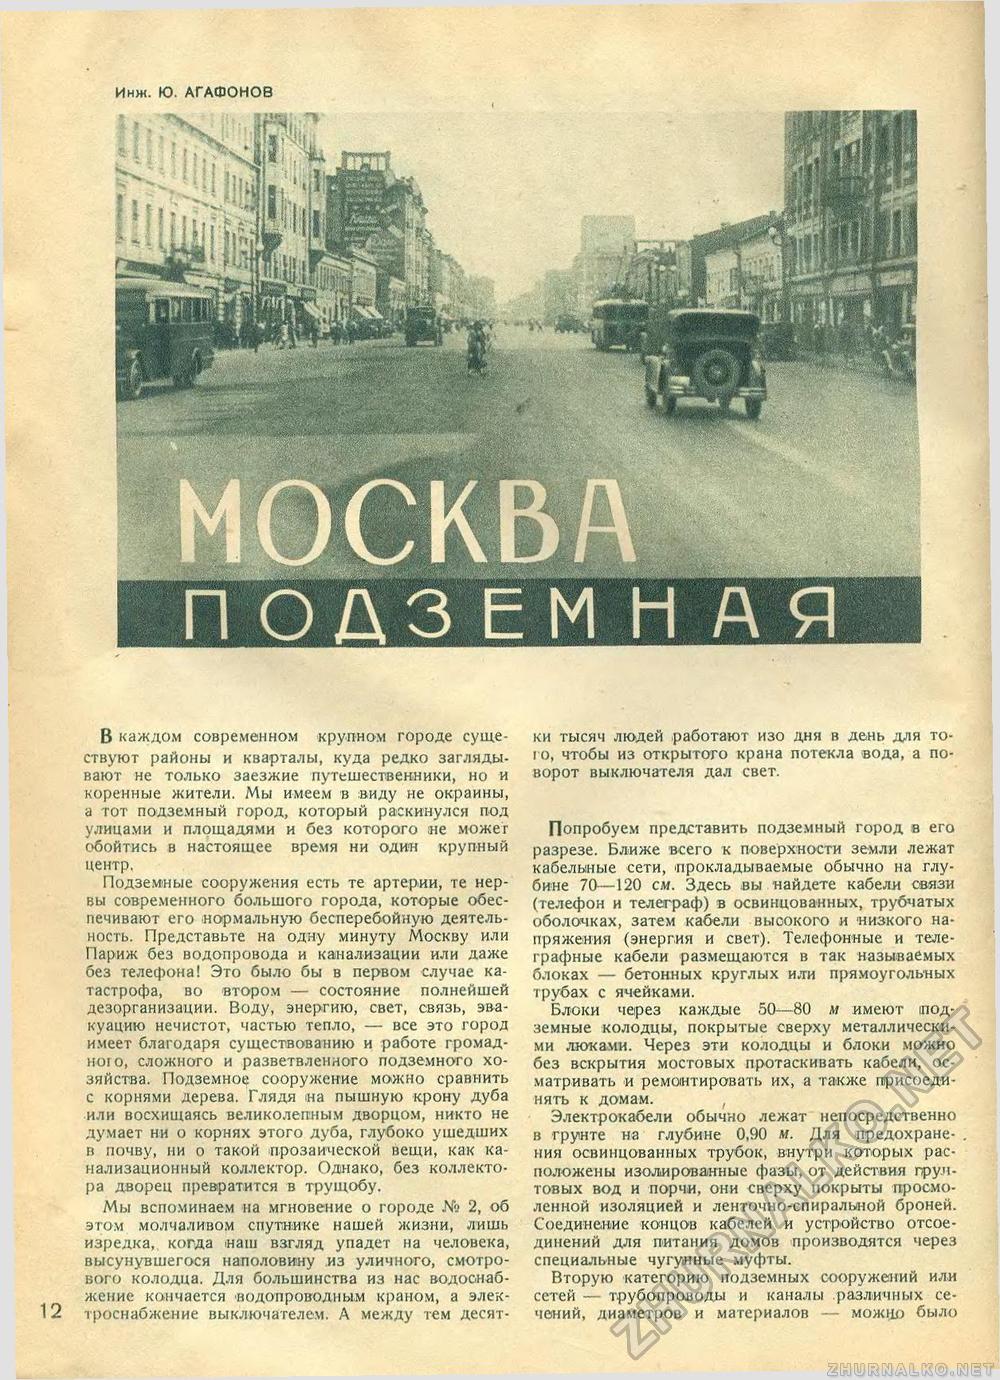  -  1936-10,  14